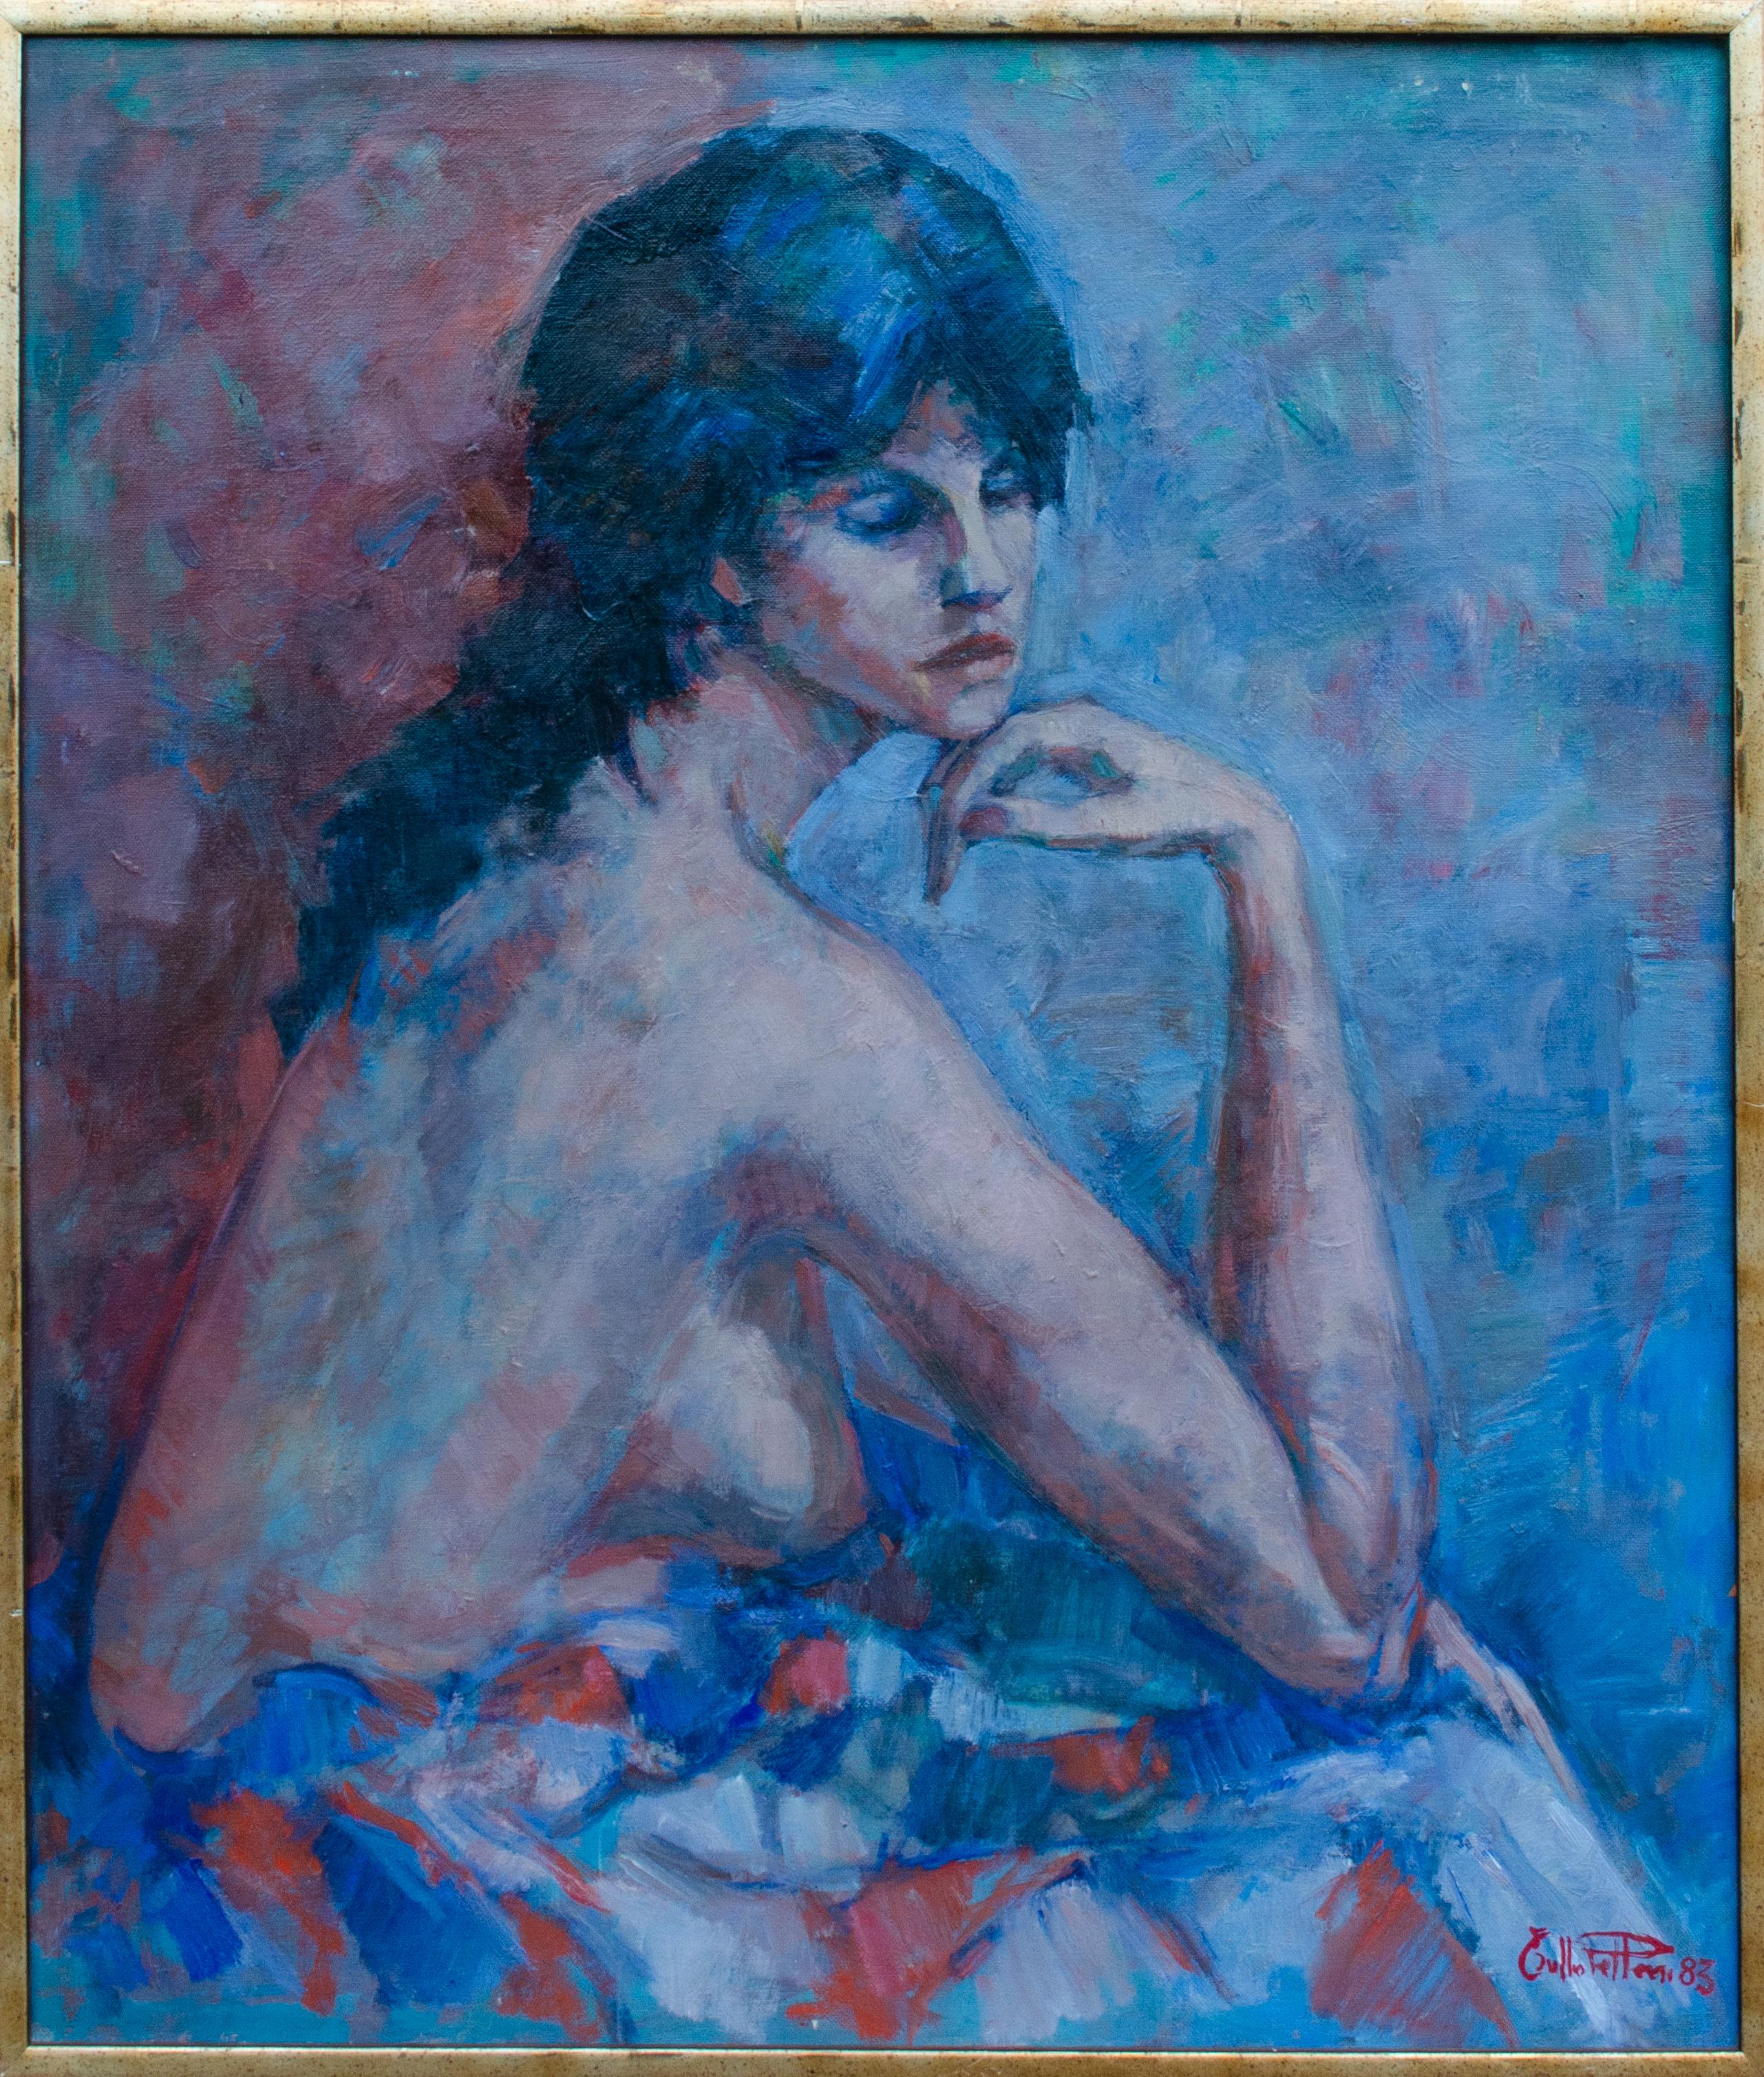 Unknown Portrait Painting – Mystery Modernistisches italienisches Künstlerporträt einer oberflächlichen Frau